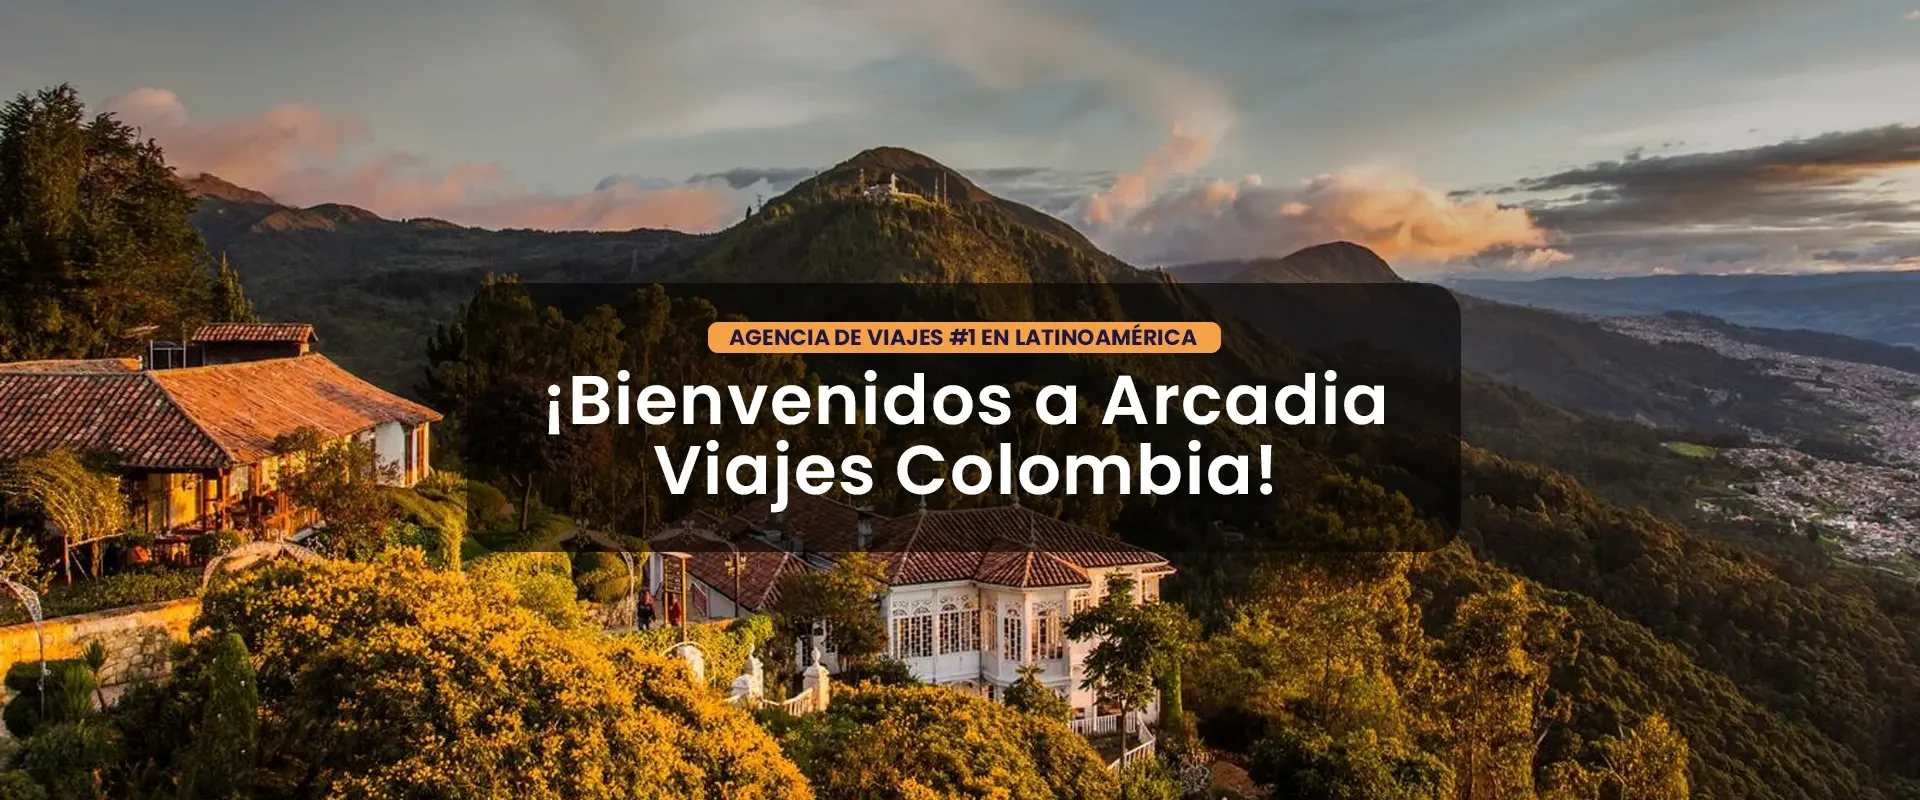 Arcadia Viajes Colombia